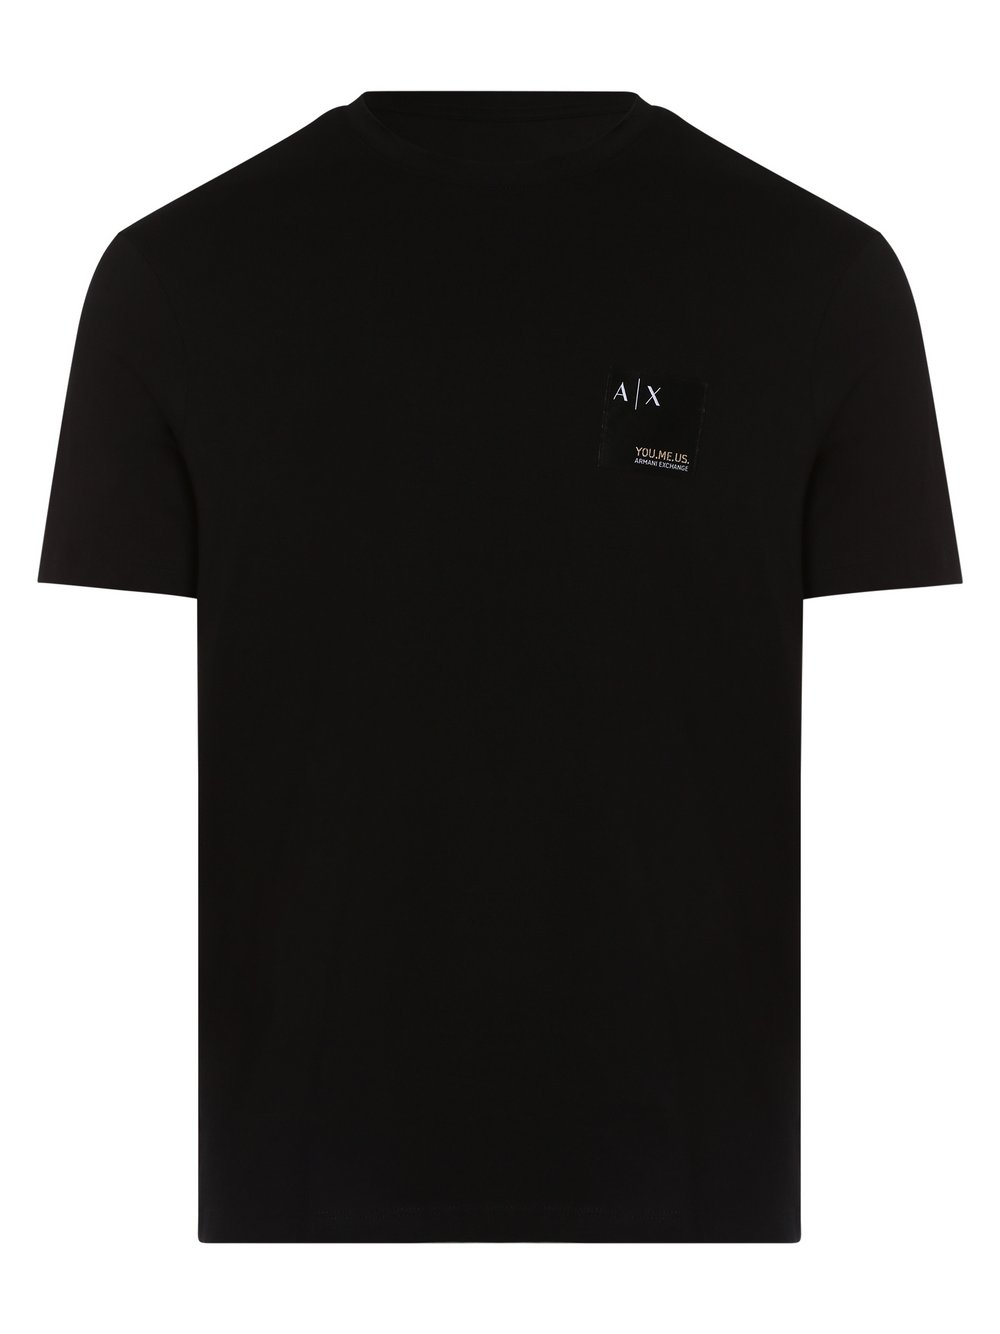 Armani Exchange - T-shirt męski, czarny